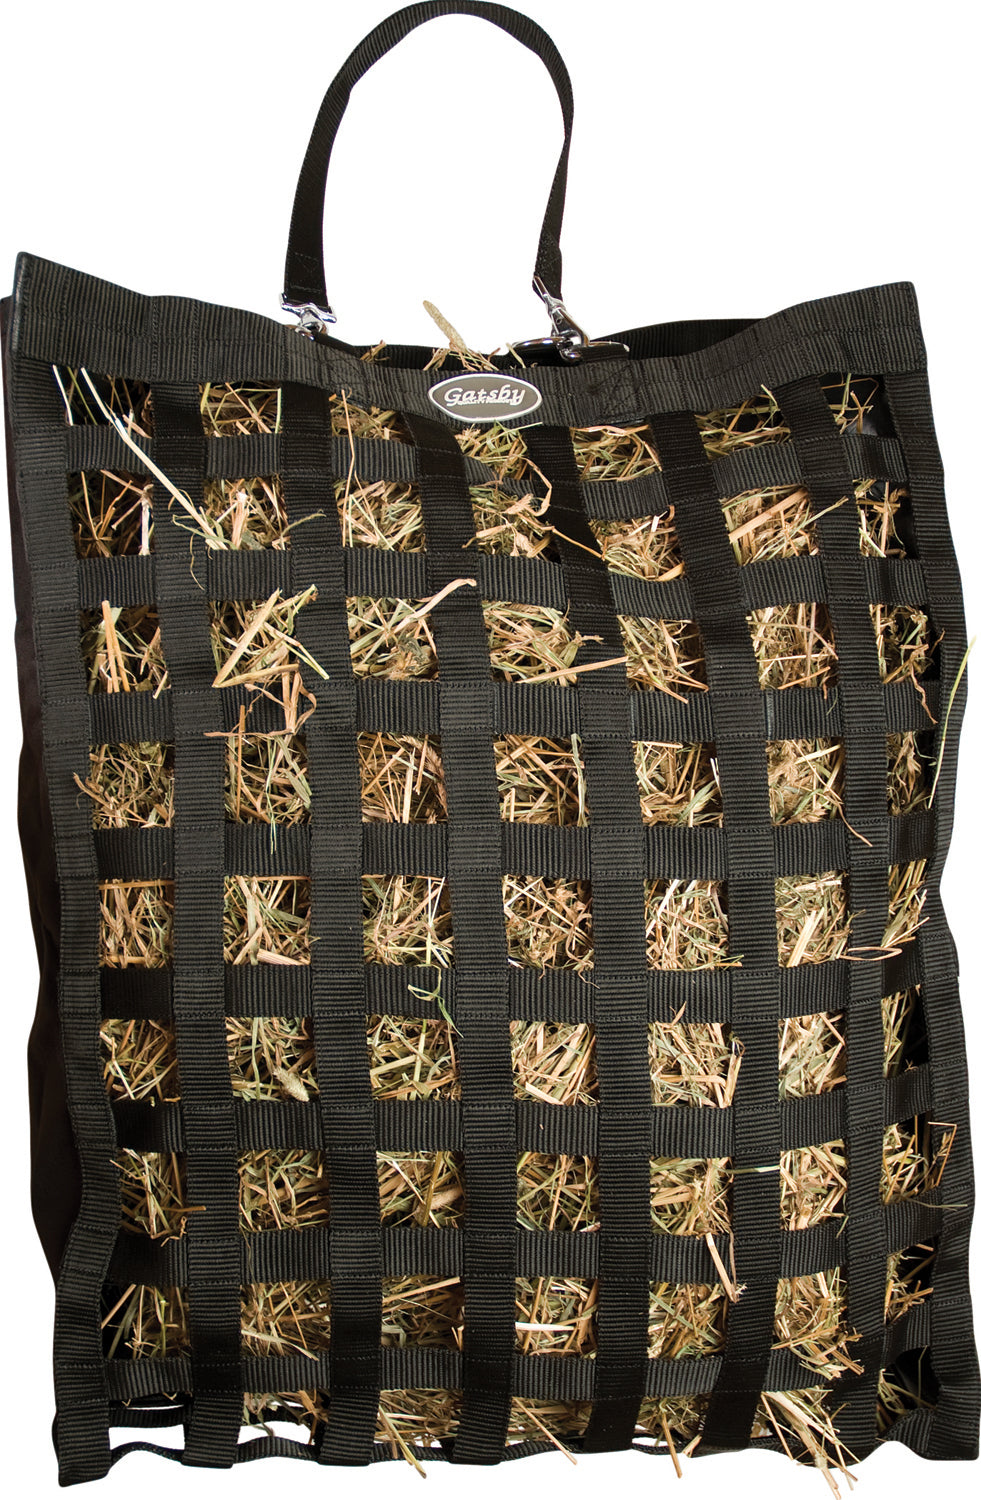 Gatsby Leather Company-Slow Hay Feeder Bag- Black 20x27x6.5 Inch